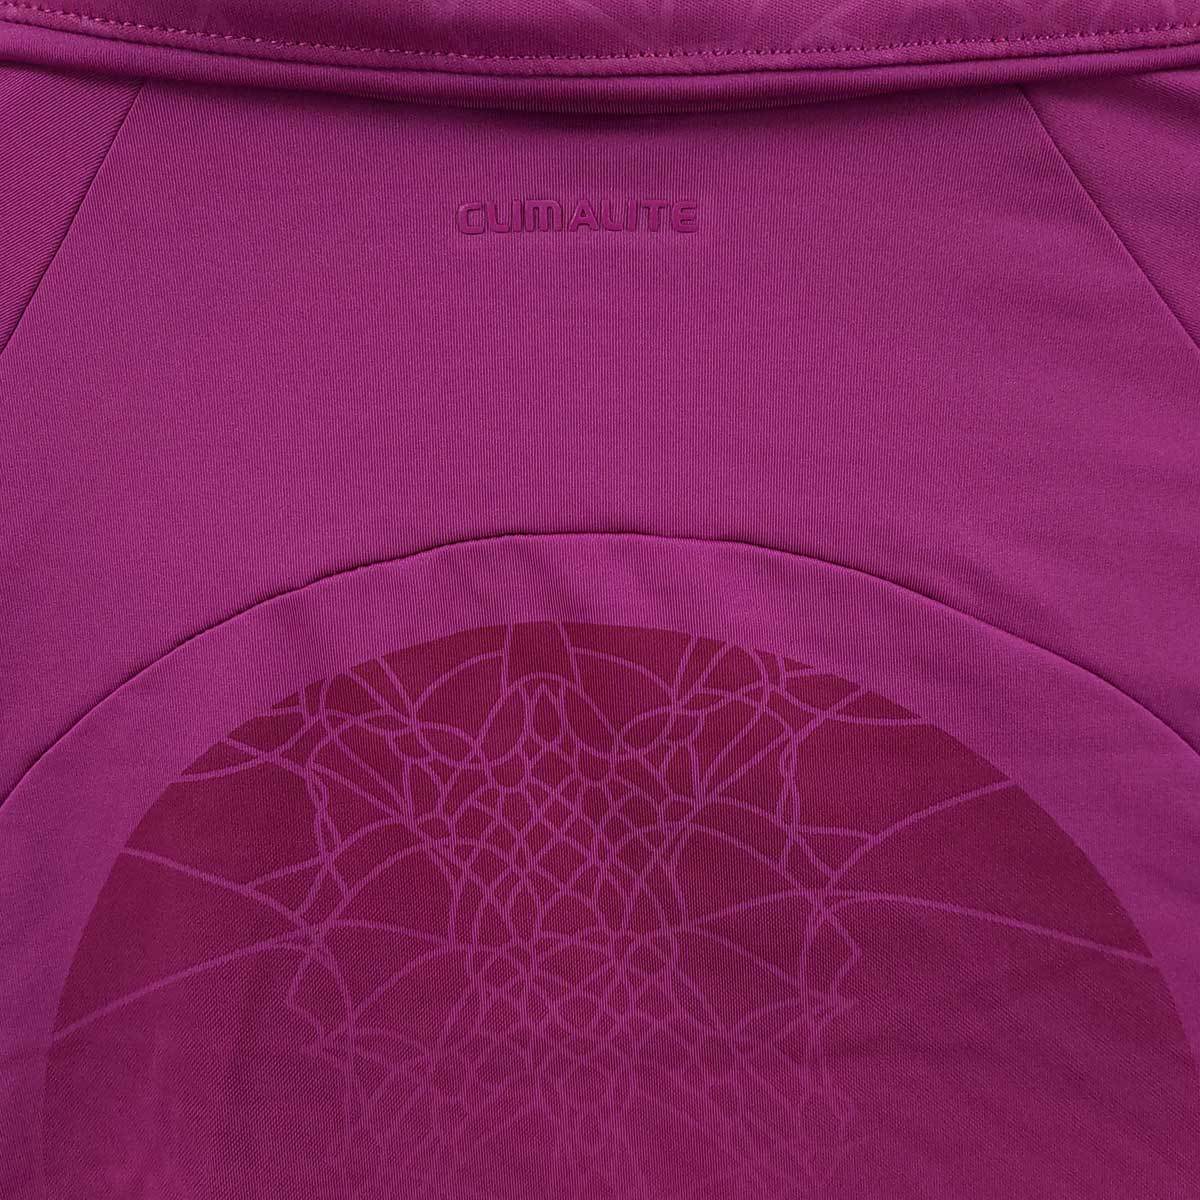 【 подержанный товар 】 adidas   стрейч  ... пиджак  L  фиолетовый   женский  ADIDAS CLIMALITE  беговой   спорт  ...